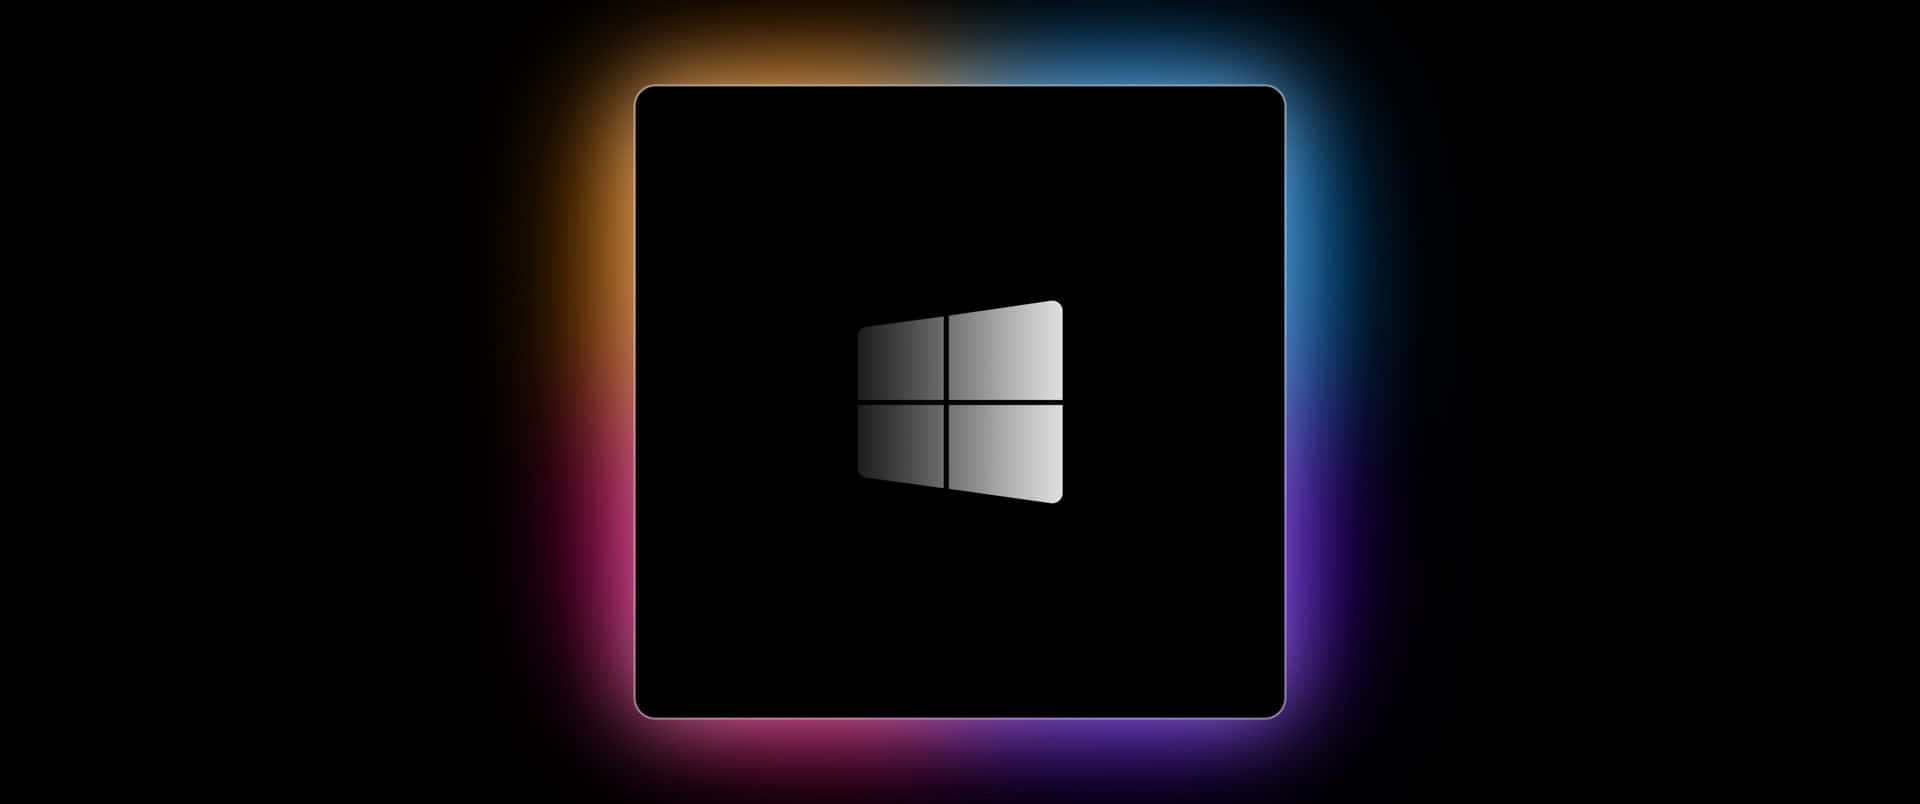 Schwarzerhintergrund Für Windows 3440 X 1440